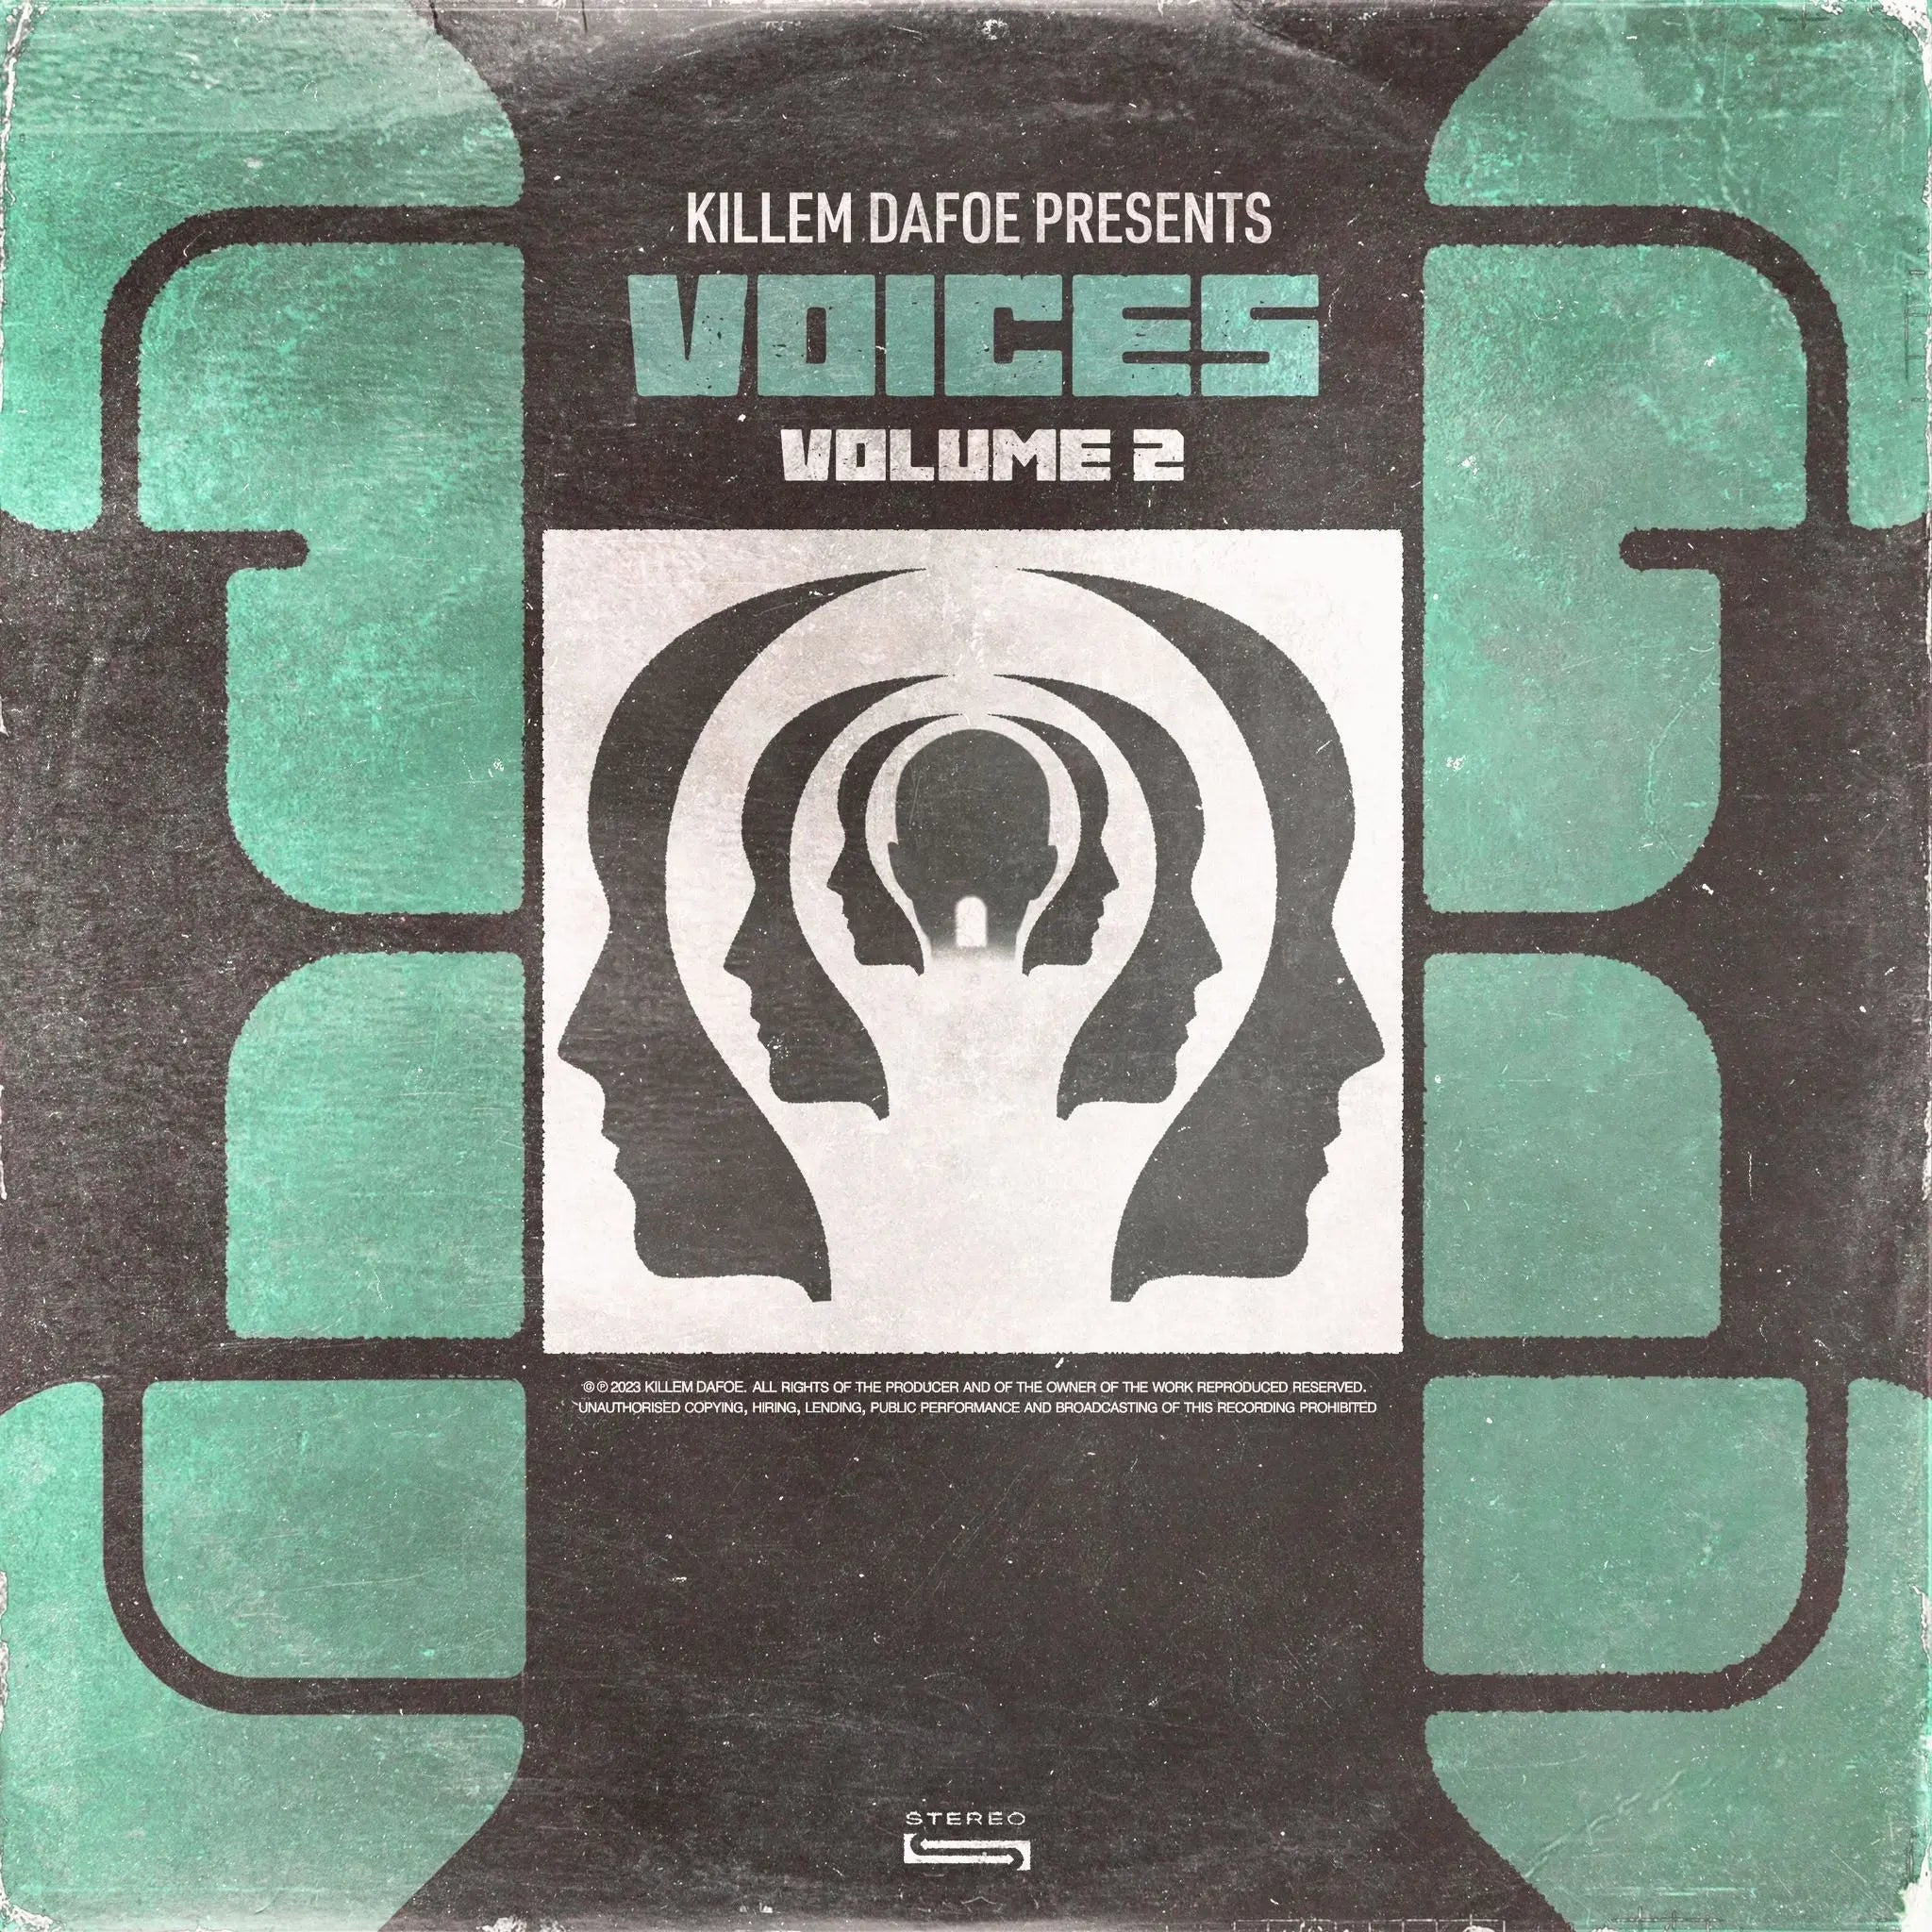 Voices Vol. 2 Killem Dafoe